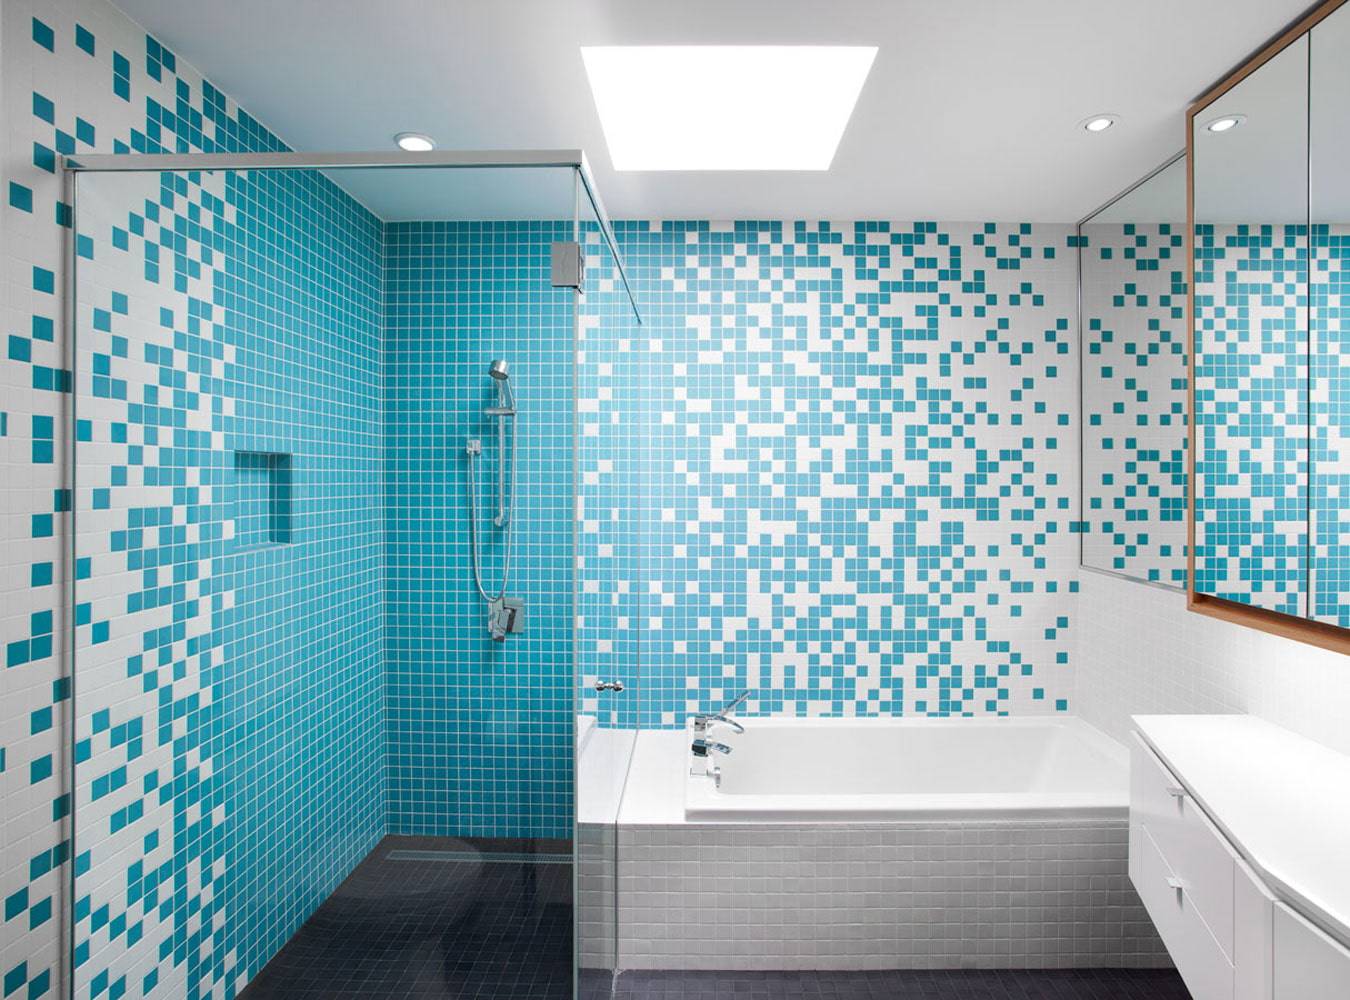 Мозаика для ванной комнаты: фото дизайна стеклянной, пластиковой и керамической мозаикой